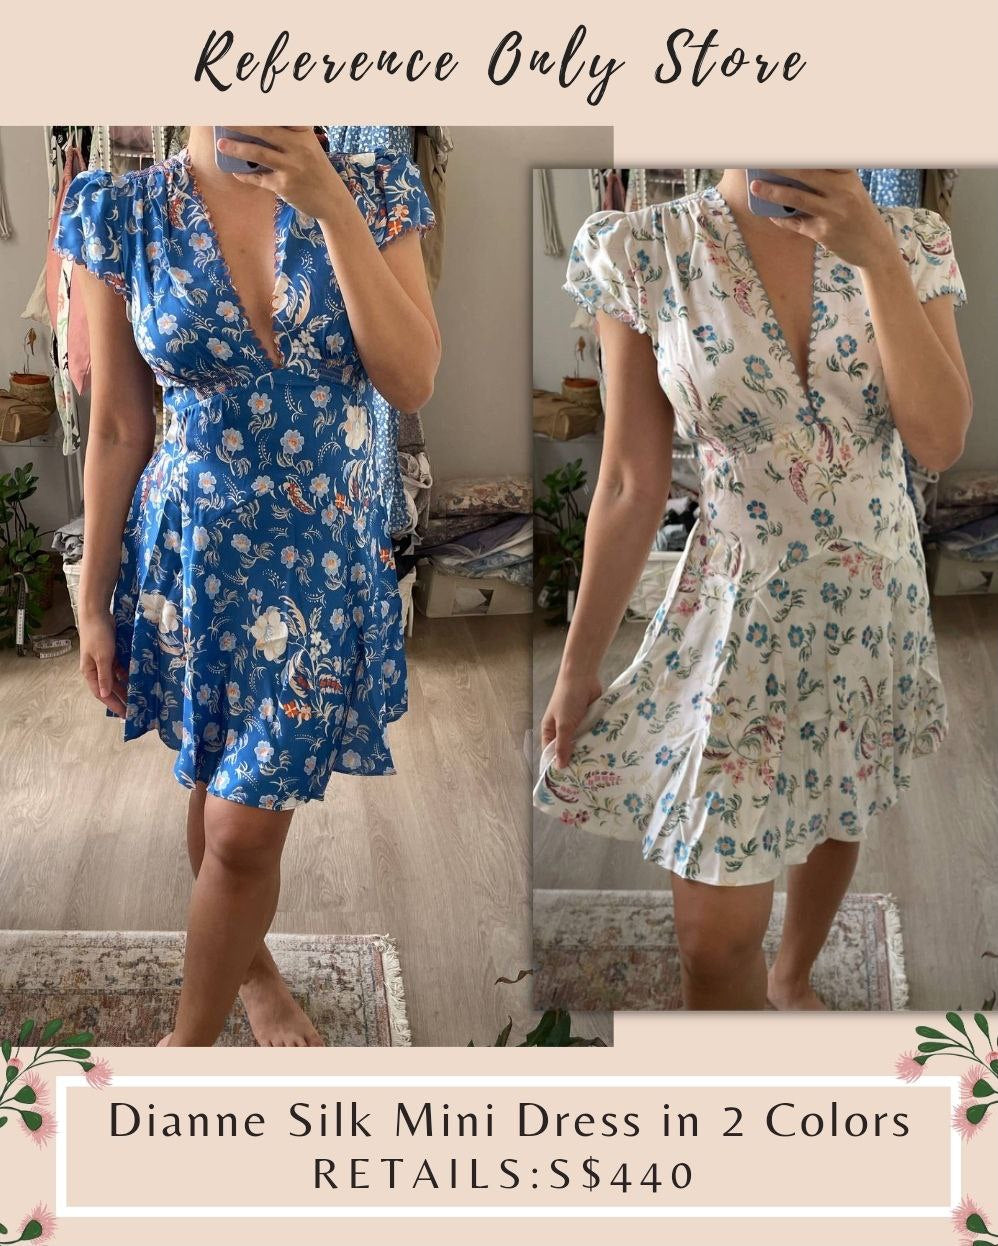 DN Dianne Silk Mini Dress in 2 colors